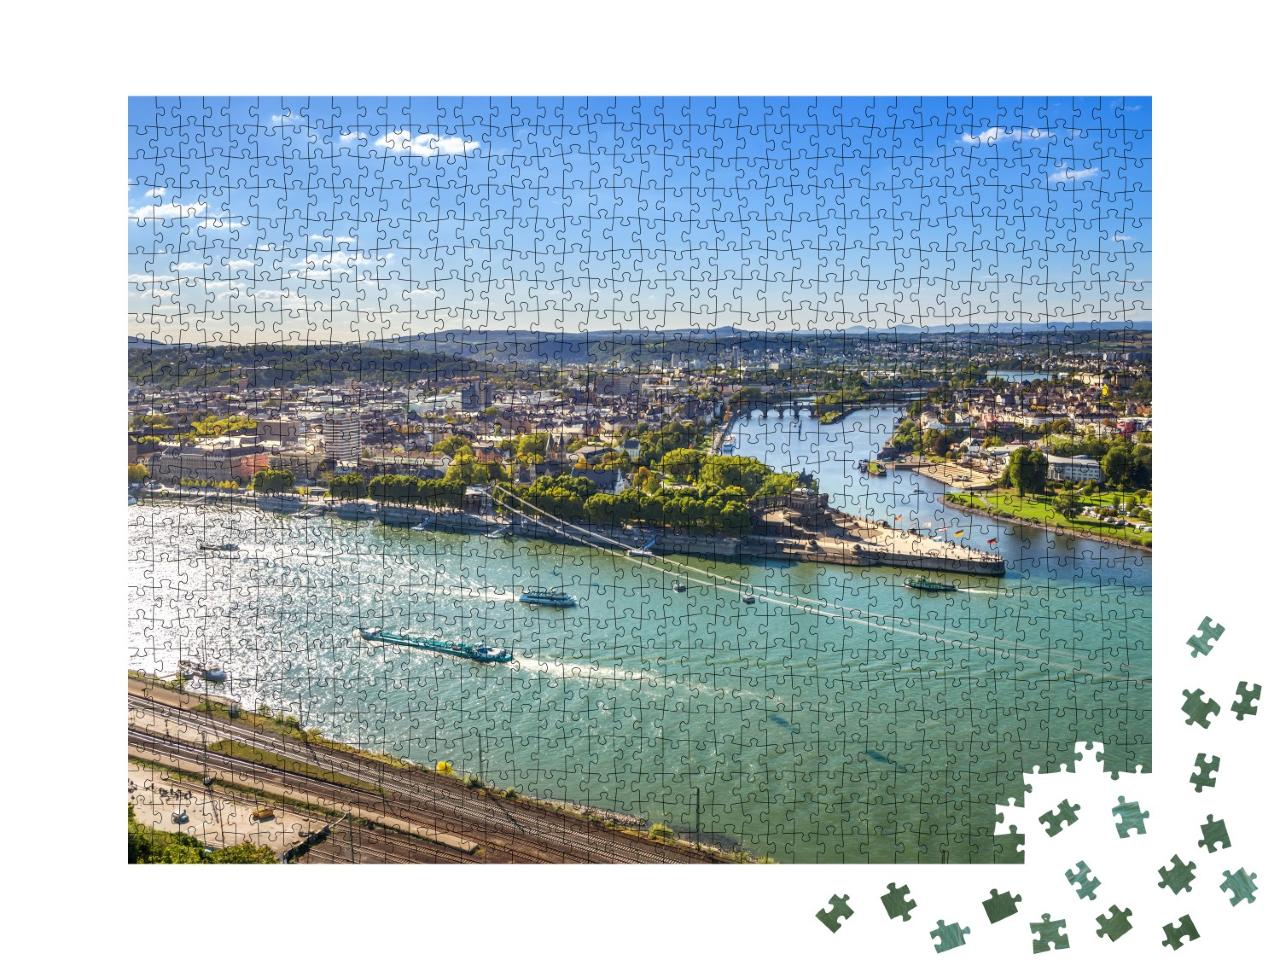 Puzzle 1000 Teile „Koblenz, Deutsches Eck: Rhein und Mosel“